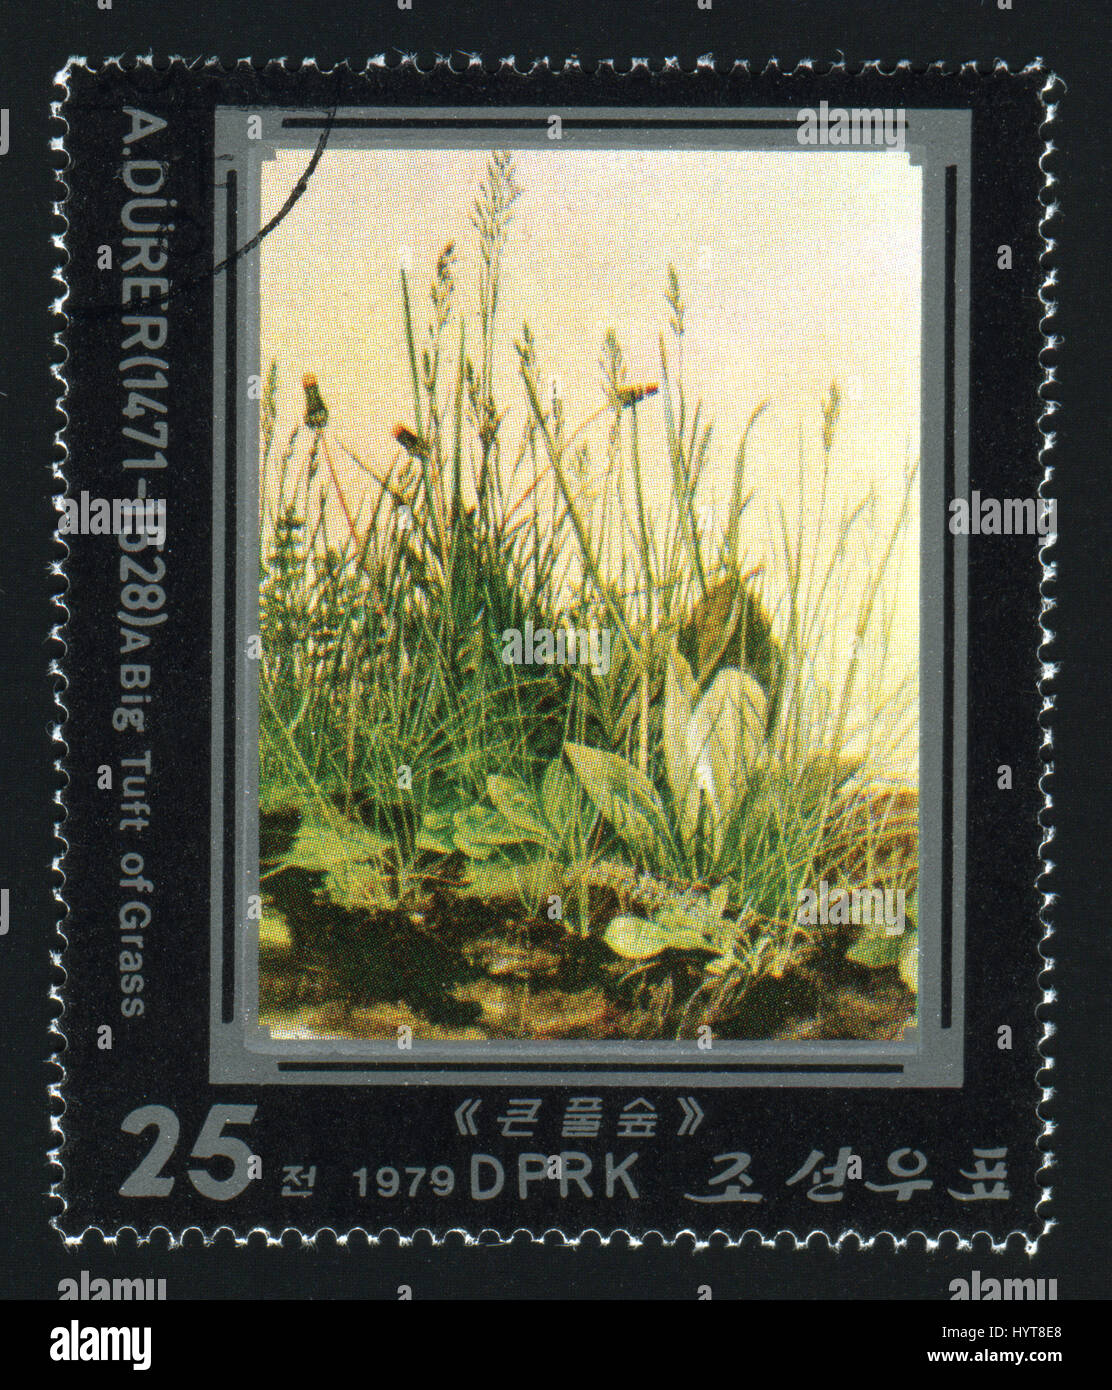 La CORÉE DU NORD - circa 1979 : un post de timbres en Corée du Nord montre une grosse touffe d'herbe par Albrecht durer, vers 1979 Banque D'Images